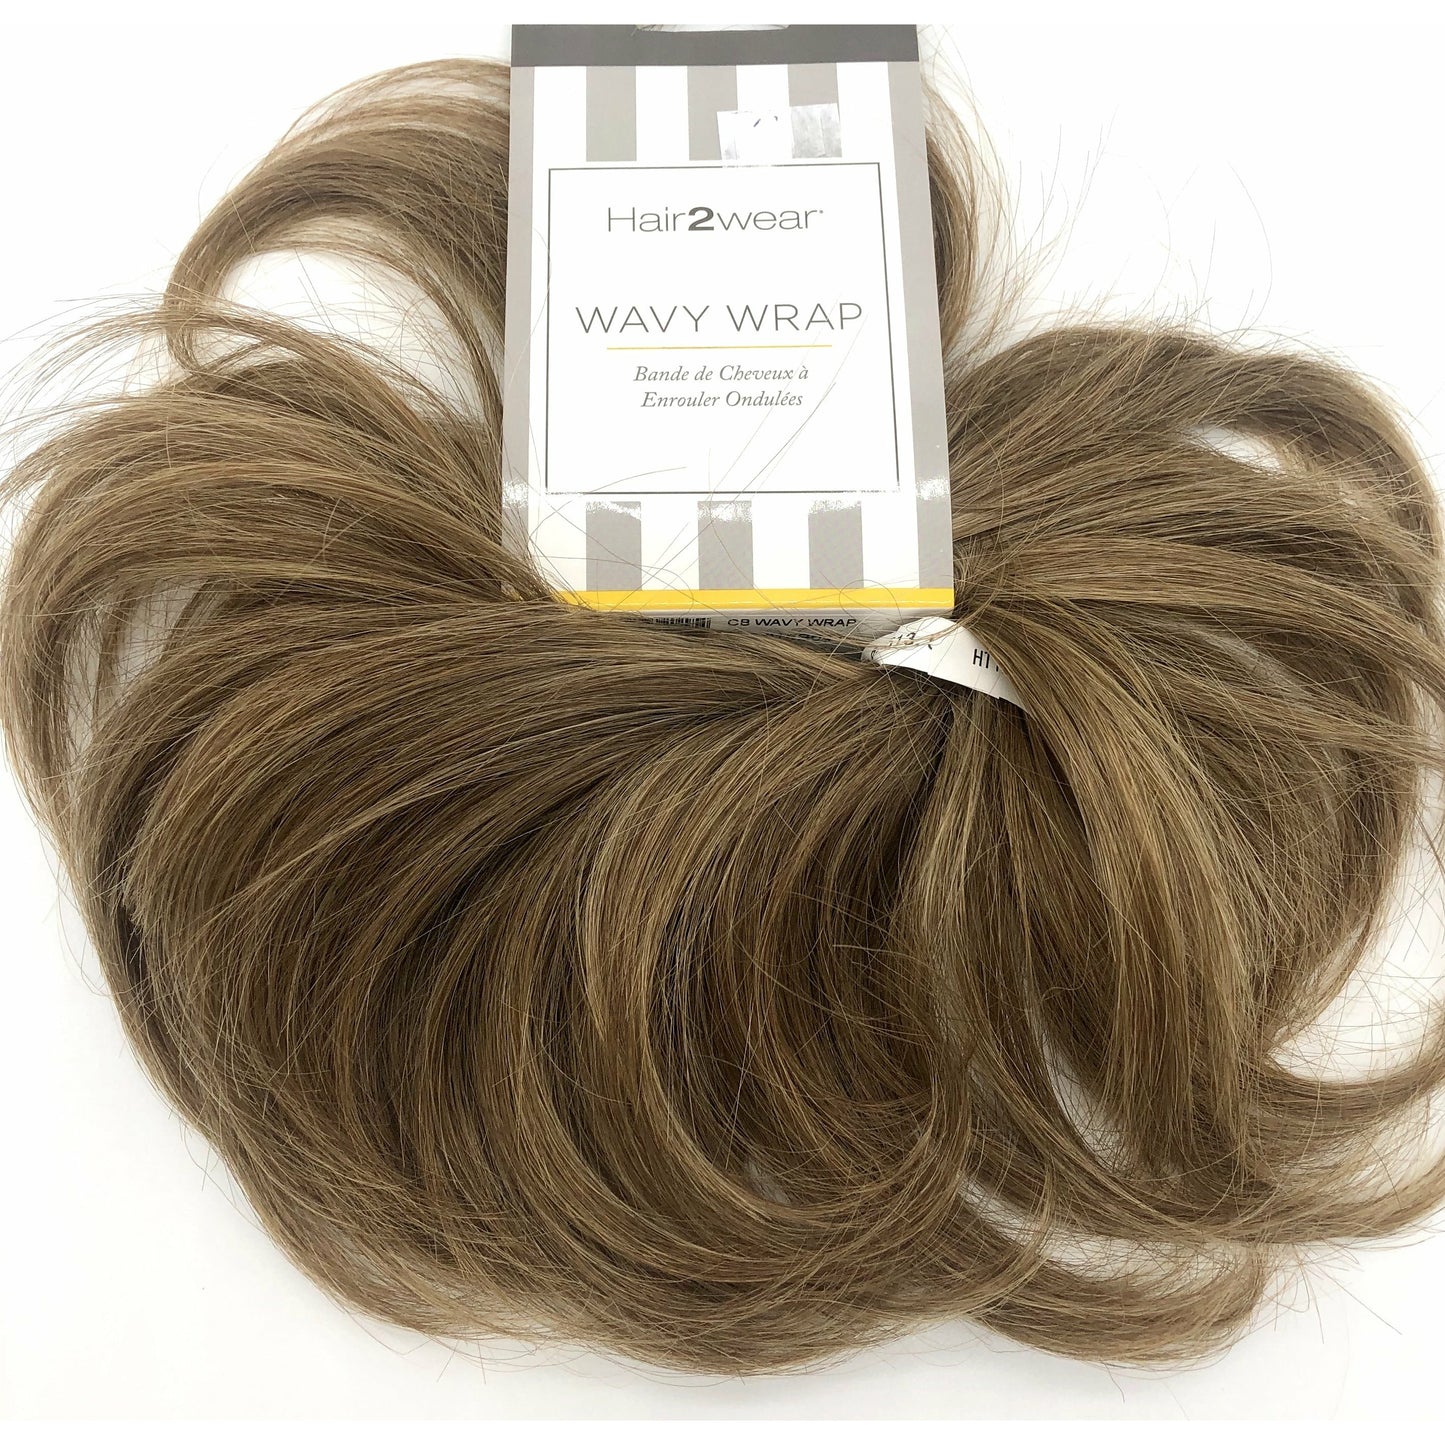 Wavy Wrap by Hairuwear - VIP Extensions